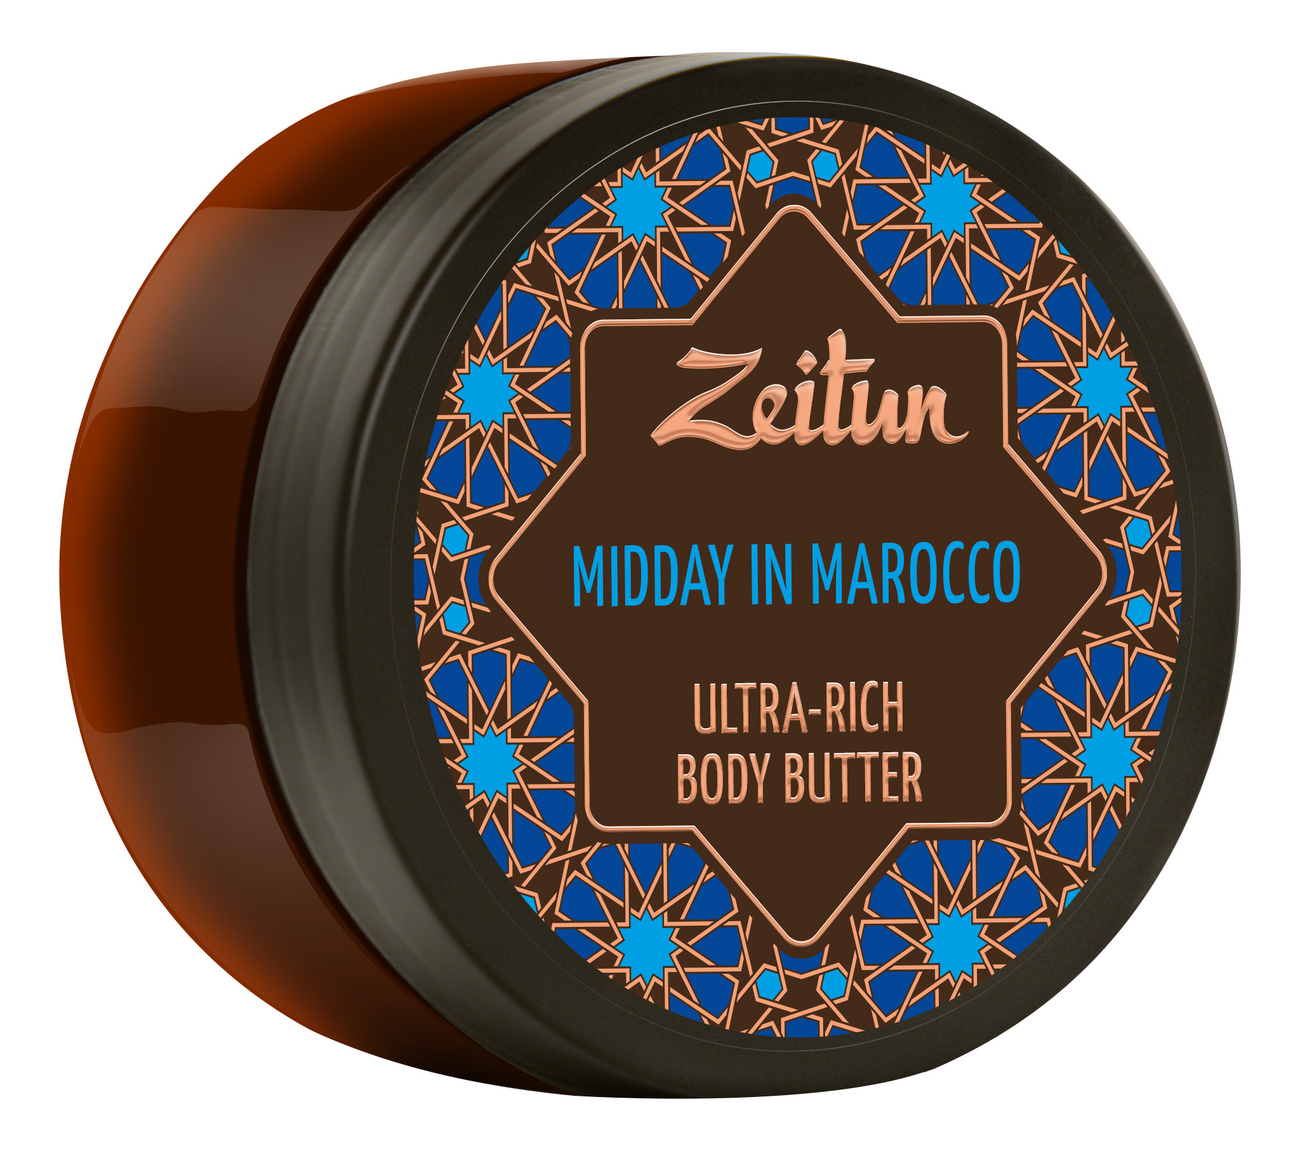 Крем-масло для тела Марокканский полдень Midday In Marocco Ultra-Rich Body Butter 200мл крем масло для подтяжки кожи марокканский полдень zeitun